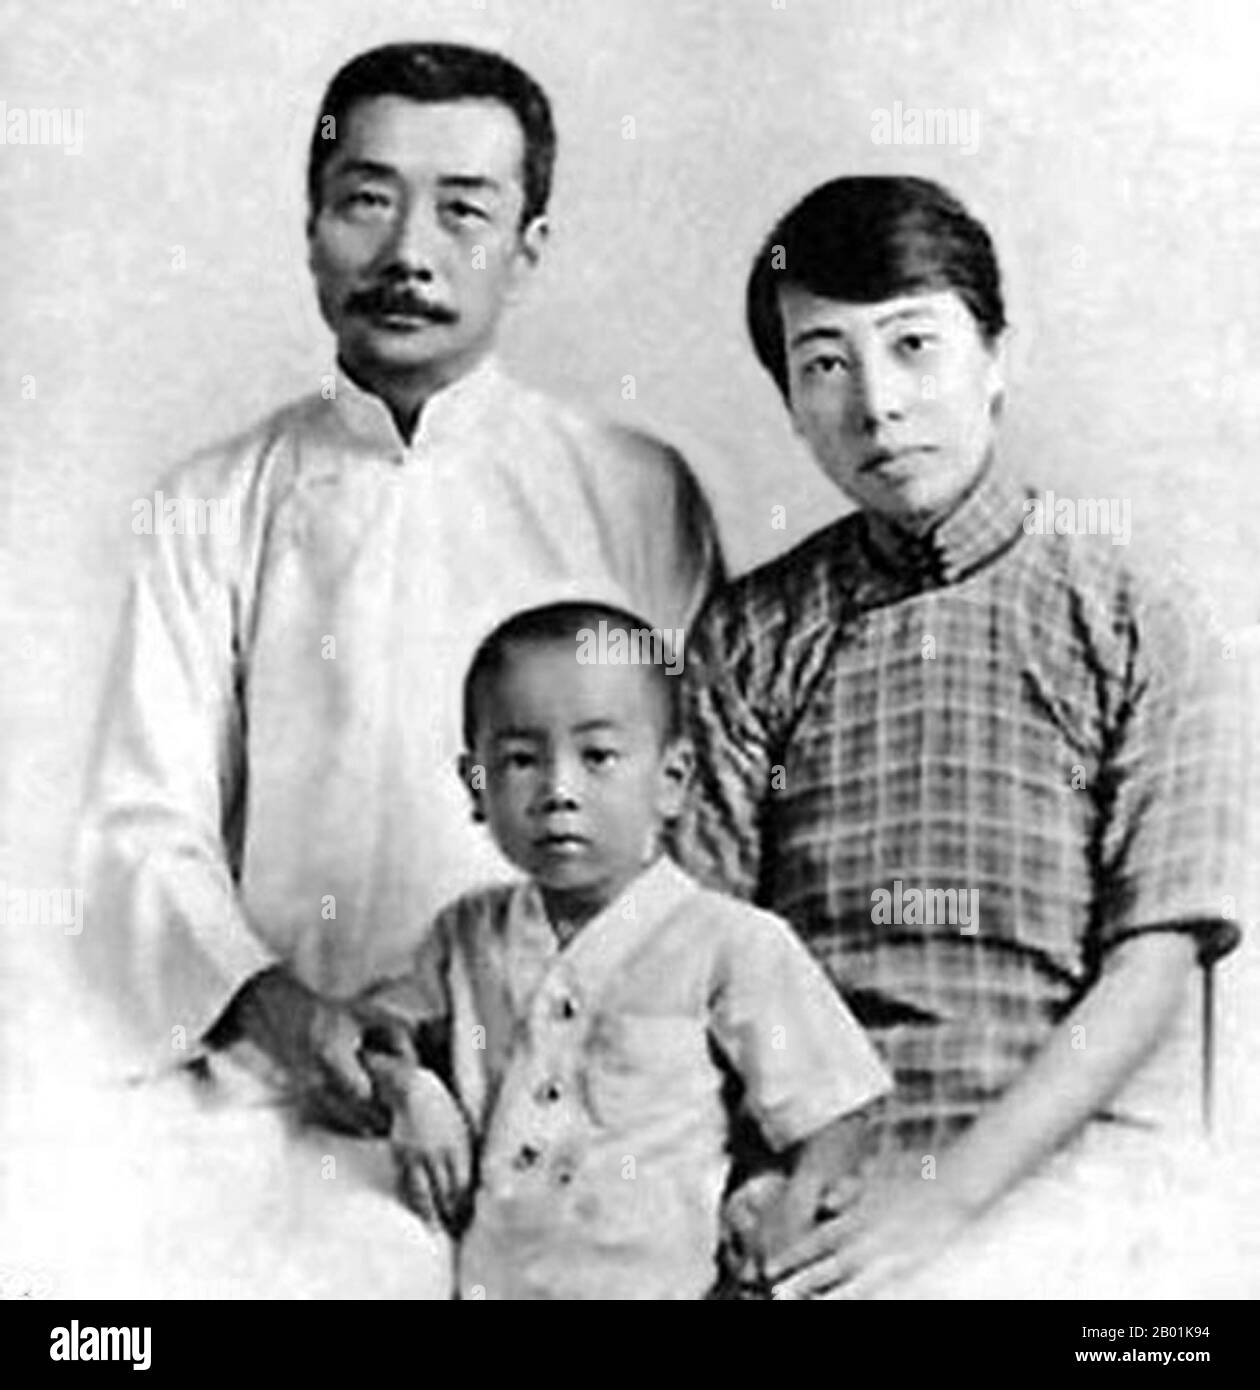 Cina: Lo scrittore e romanziere Lu Xun (25 settembre 1881 - 19 ottobre 1936) con la moglie Guang Ping e il figlio Haiying, Shanghai, 1934 circa. Lu Xun (o Lu Hsun), era lo pseudonimo di Zhou Shuren (Chou Shu-jen). Fu uno dei maggiori scrittori cinesi del XX secolo. Considerato da molti come il fondatore della letteratura cinese moderna, scrisse in baihua (il vernacolare) così come in cinese classico. Lu Xun era uno scrittore di racconti, editore, traduttore, critico, saggista e poeta. Negli anni '1930 divenne il capo titolare della Lega cinese degli scrittori di sinistra a Shanghai. Foto Stock